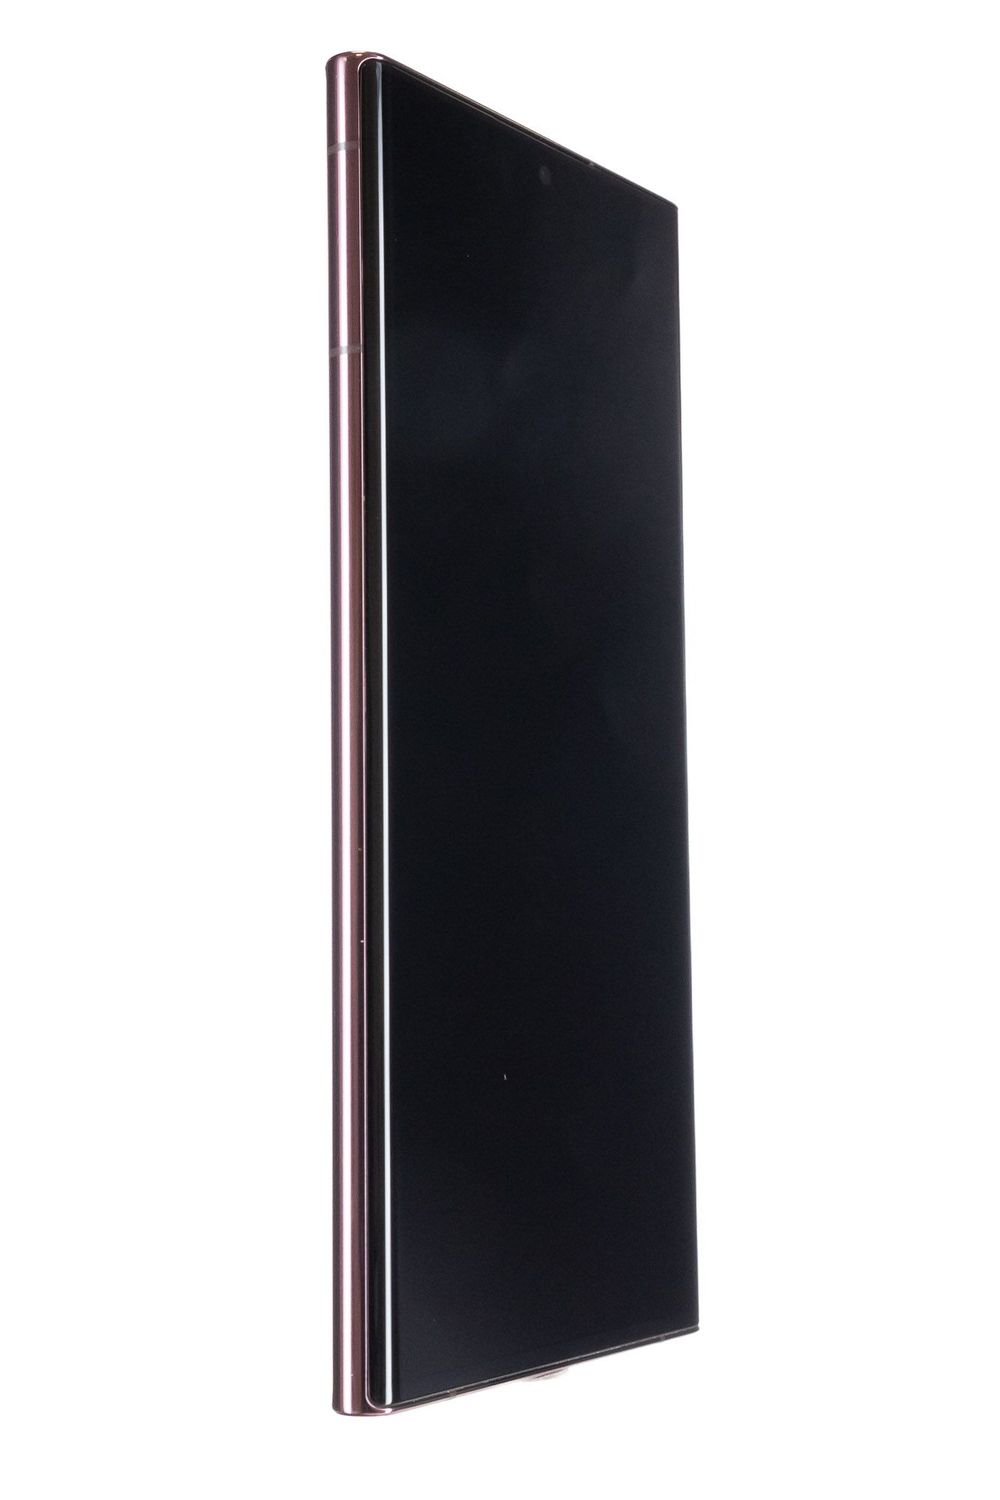 Mobiltelefon Samsung Galaxy S22 Ultra 5G Dual Sim, Burgundy, 128 GB, Foarte Bun